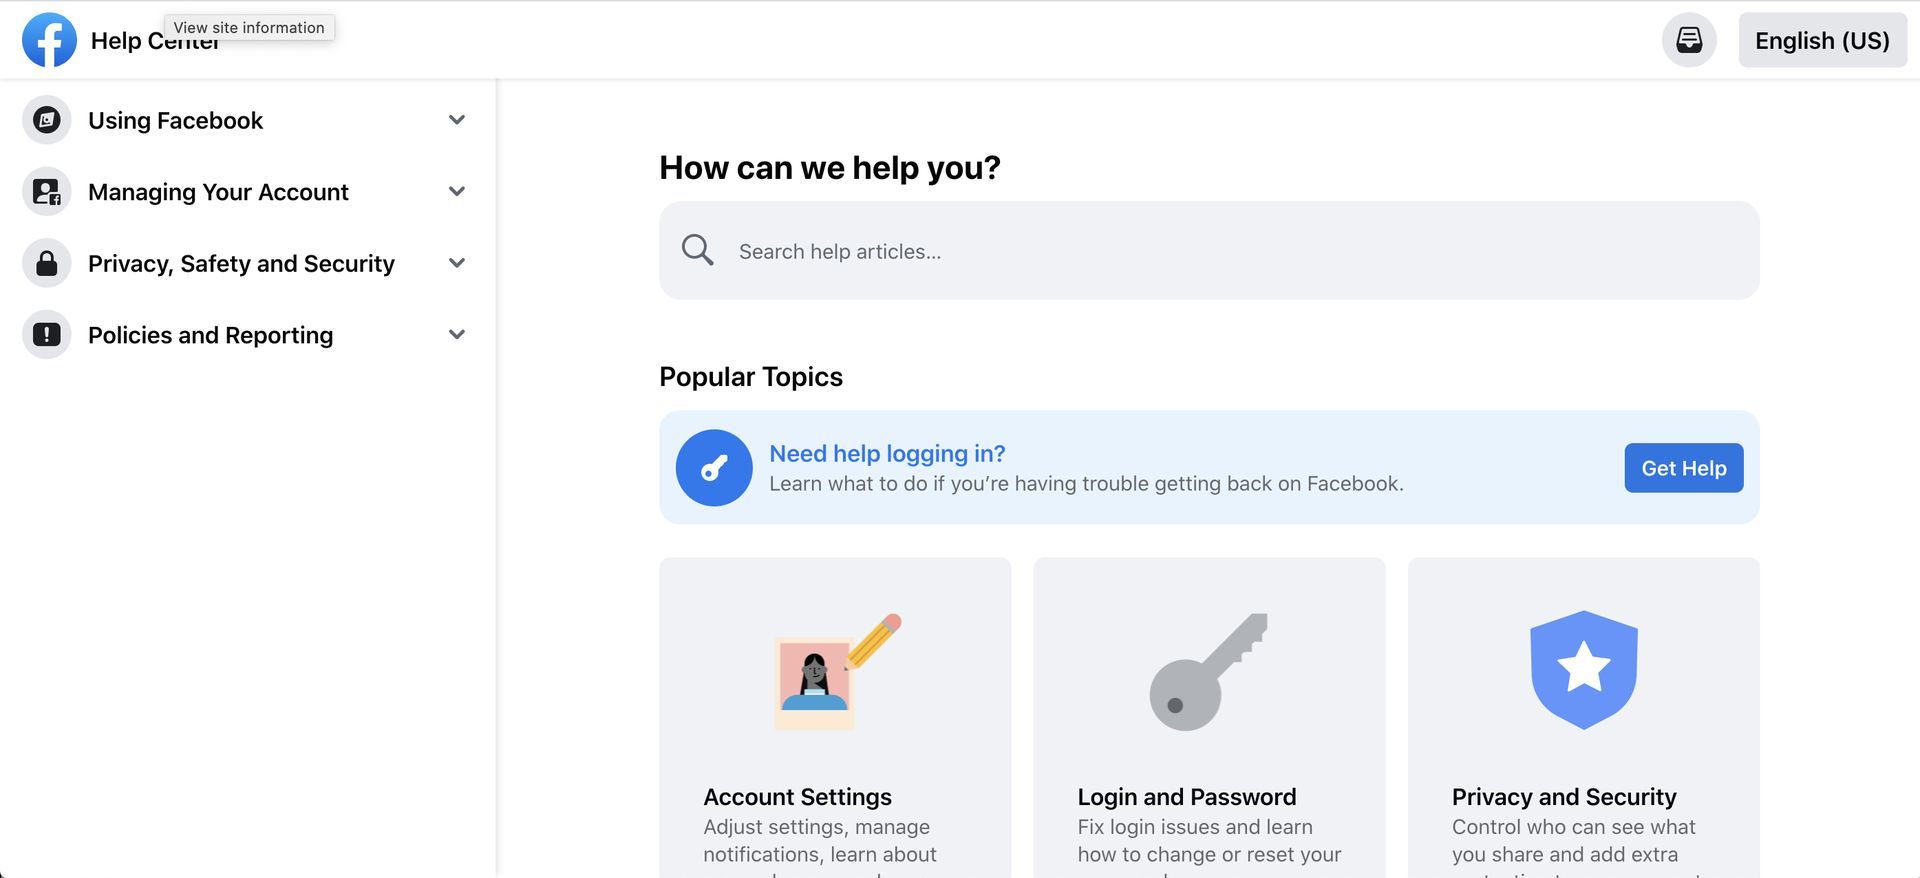 Cómo arreglar Facebook Protect no funciona